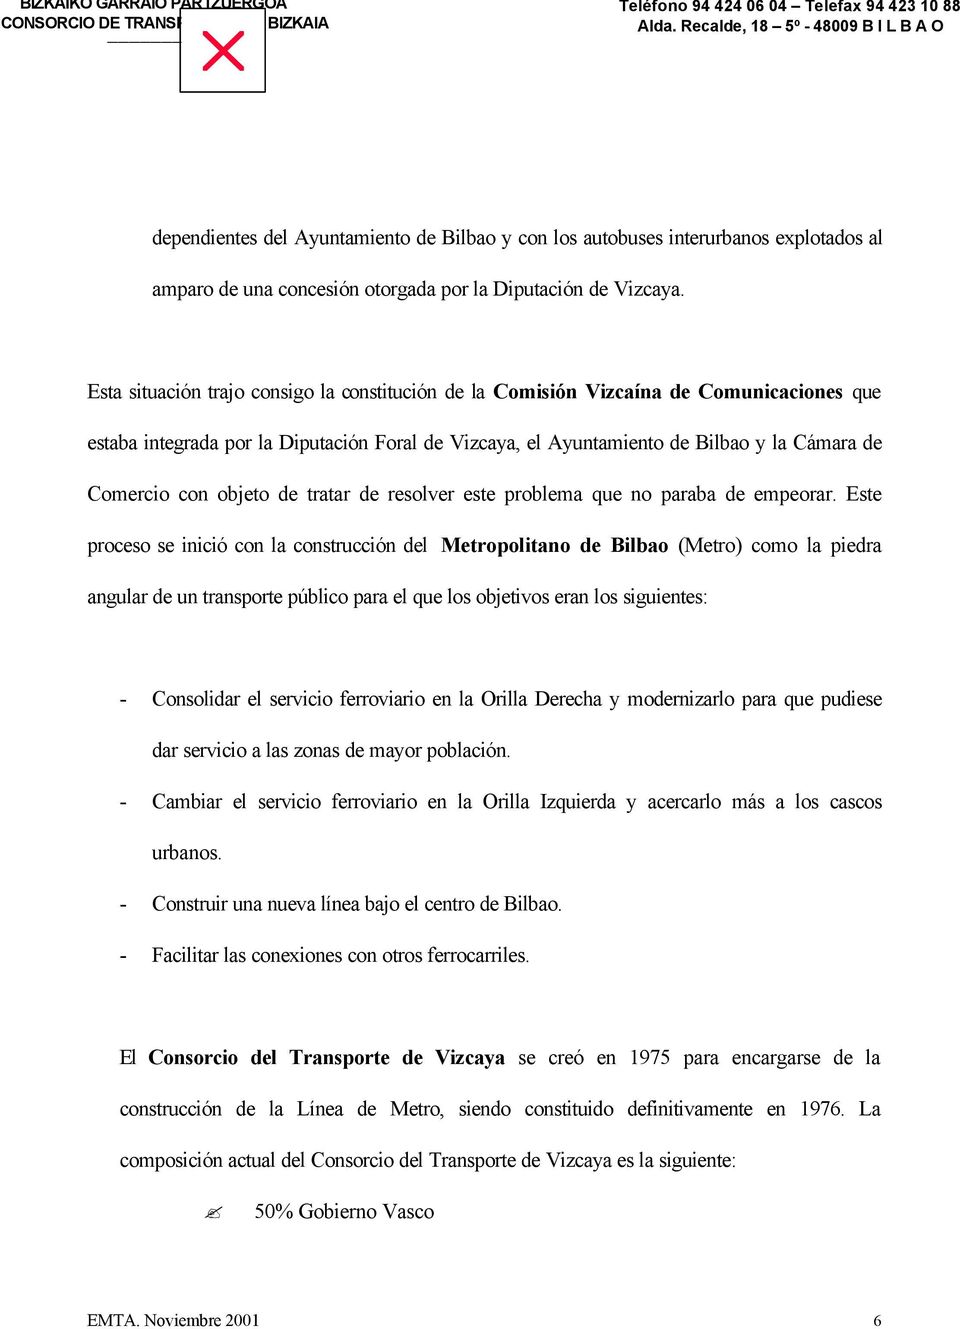 Esta situación trajo consigo la constitución de la Comisión Vizcaína de Comunicaciones que estaba integrada por la Diputación Foral de Vizcaya, el Ayuntamiento de Bilbao y la Cámara de Comercio con